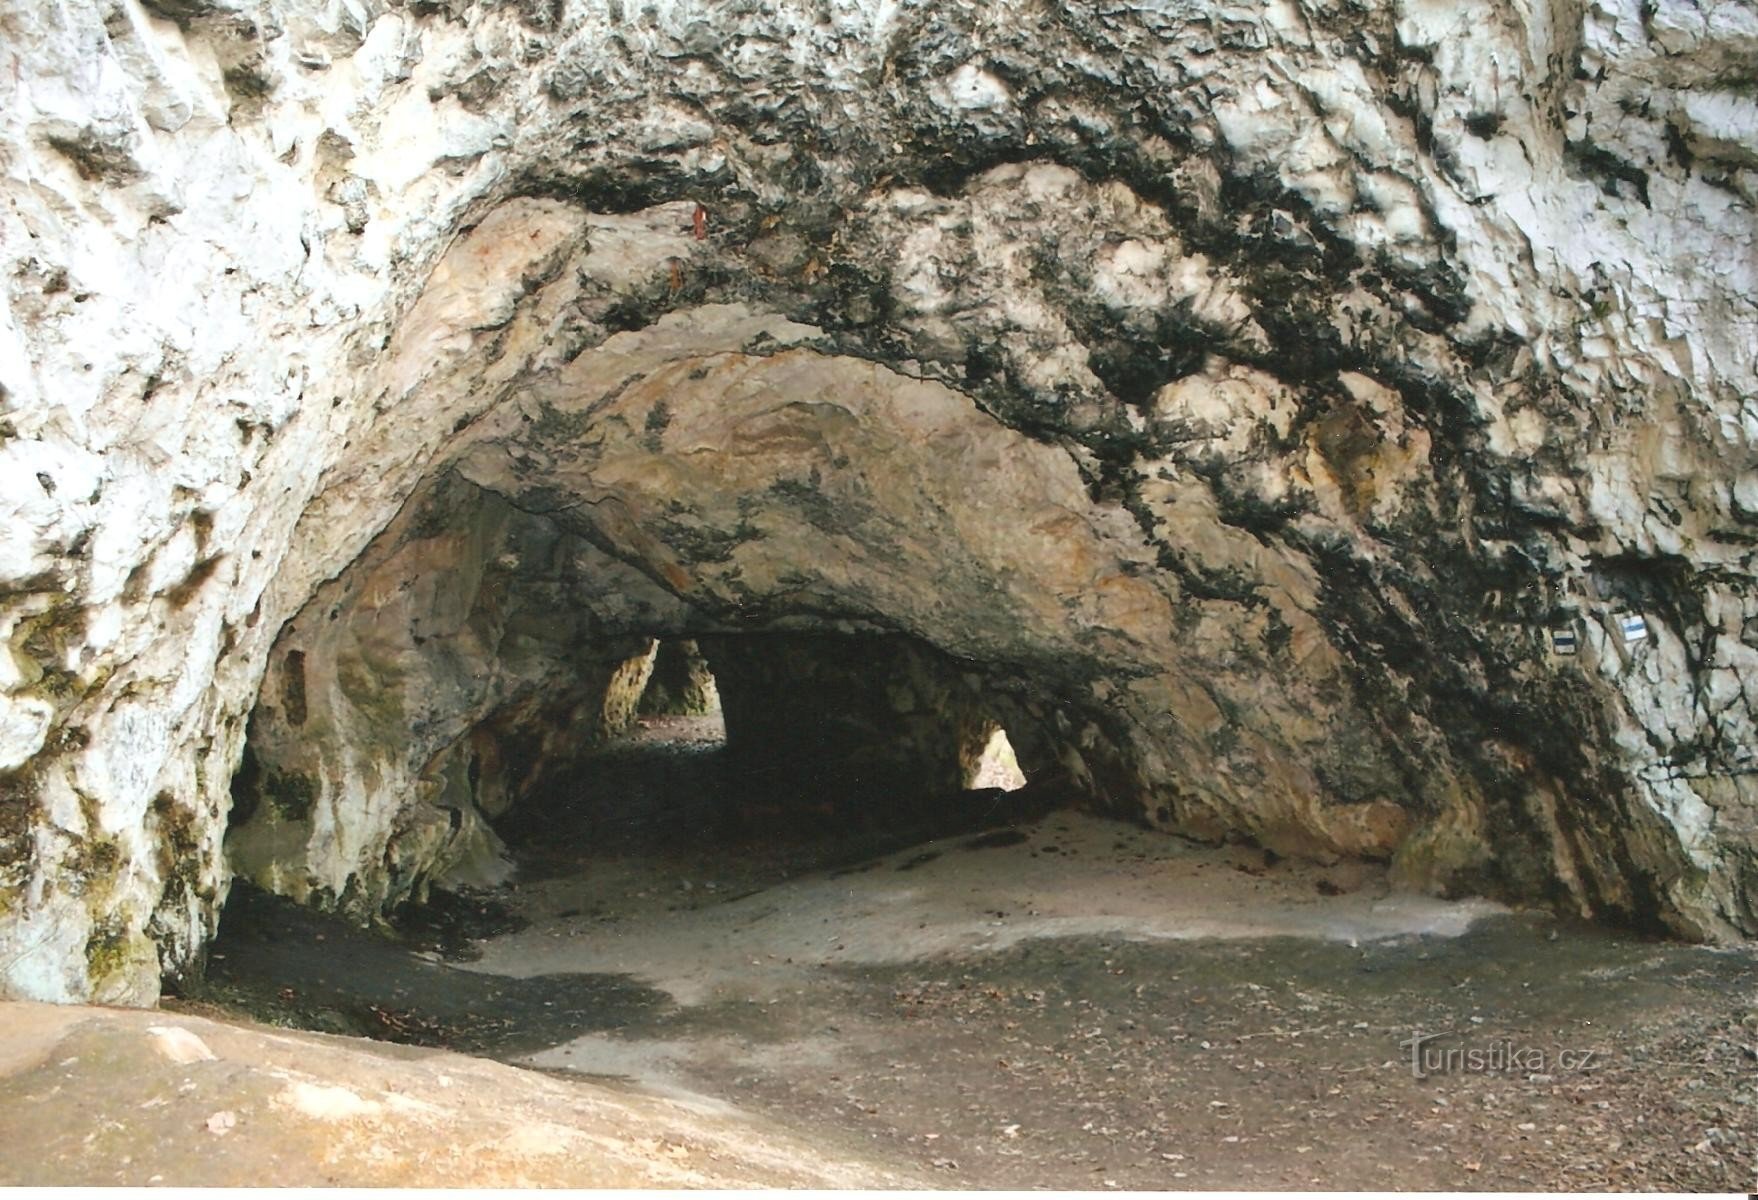 Jáchymka Cave